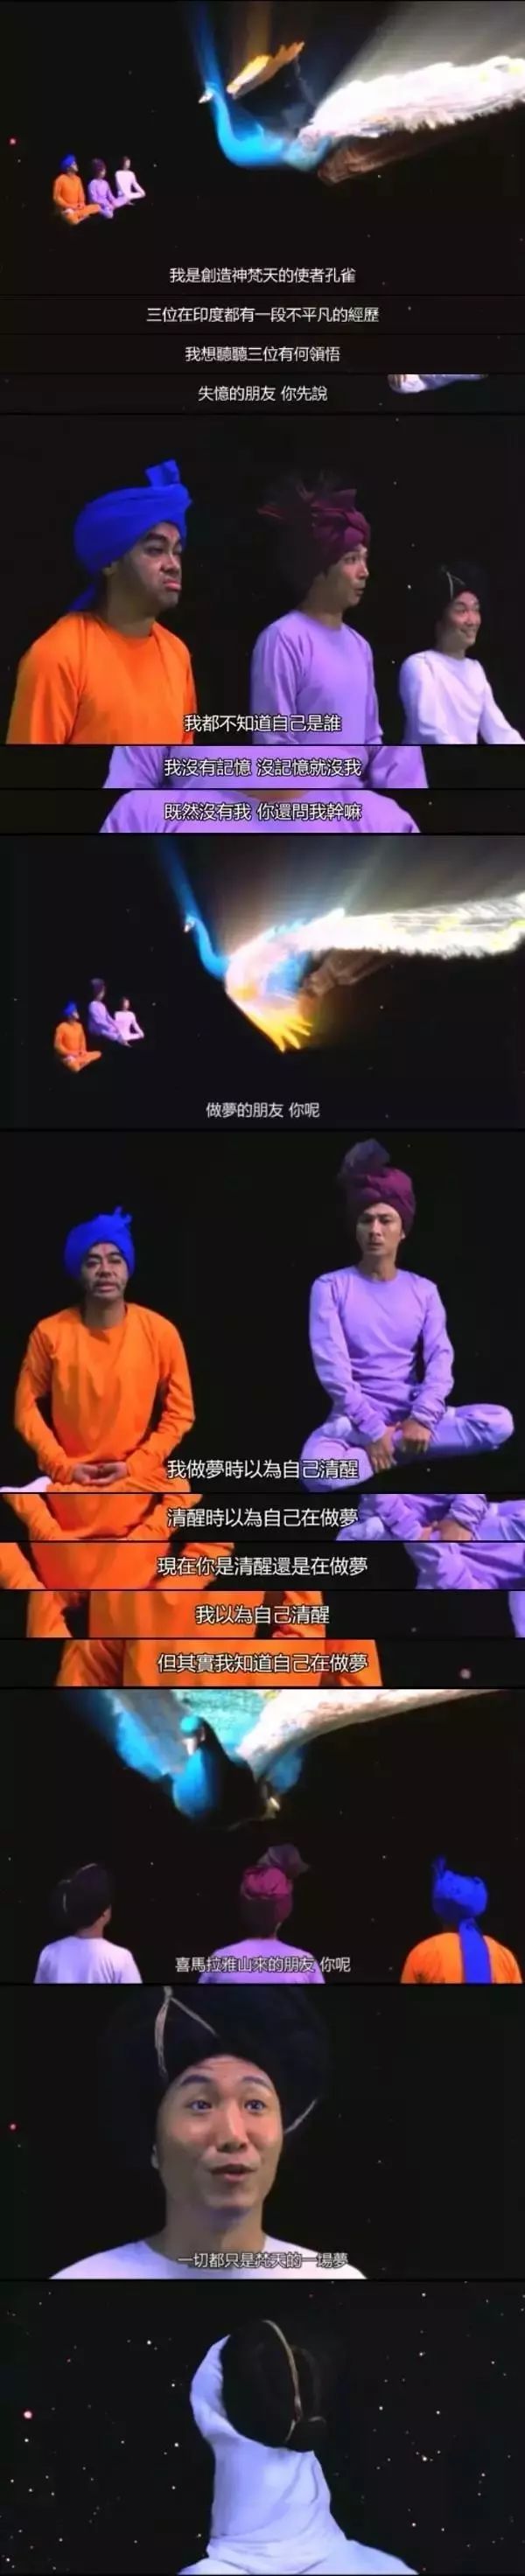 張柏芝和應采兒聯袂出演的「瑜伽喜劇電影」爆笑來襲，披著荒誕外衣卻發人深省「YoGa大改造」 娛樂 第23張